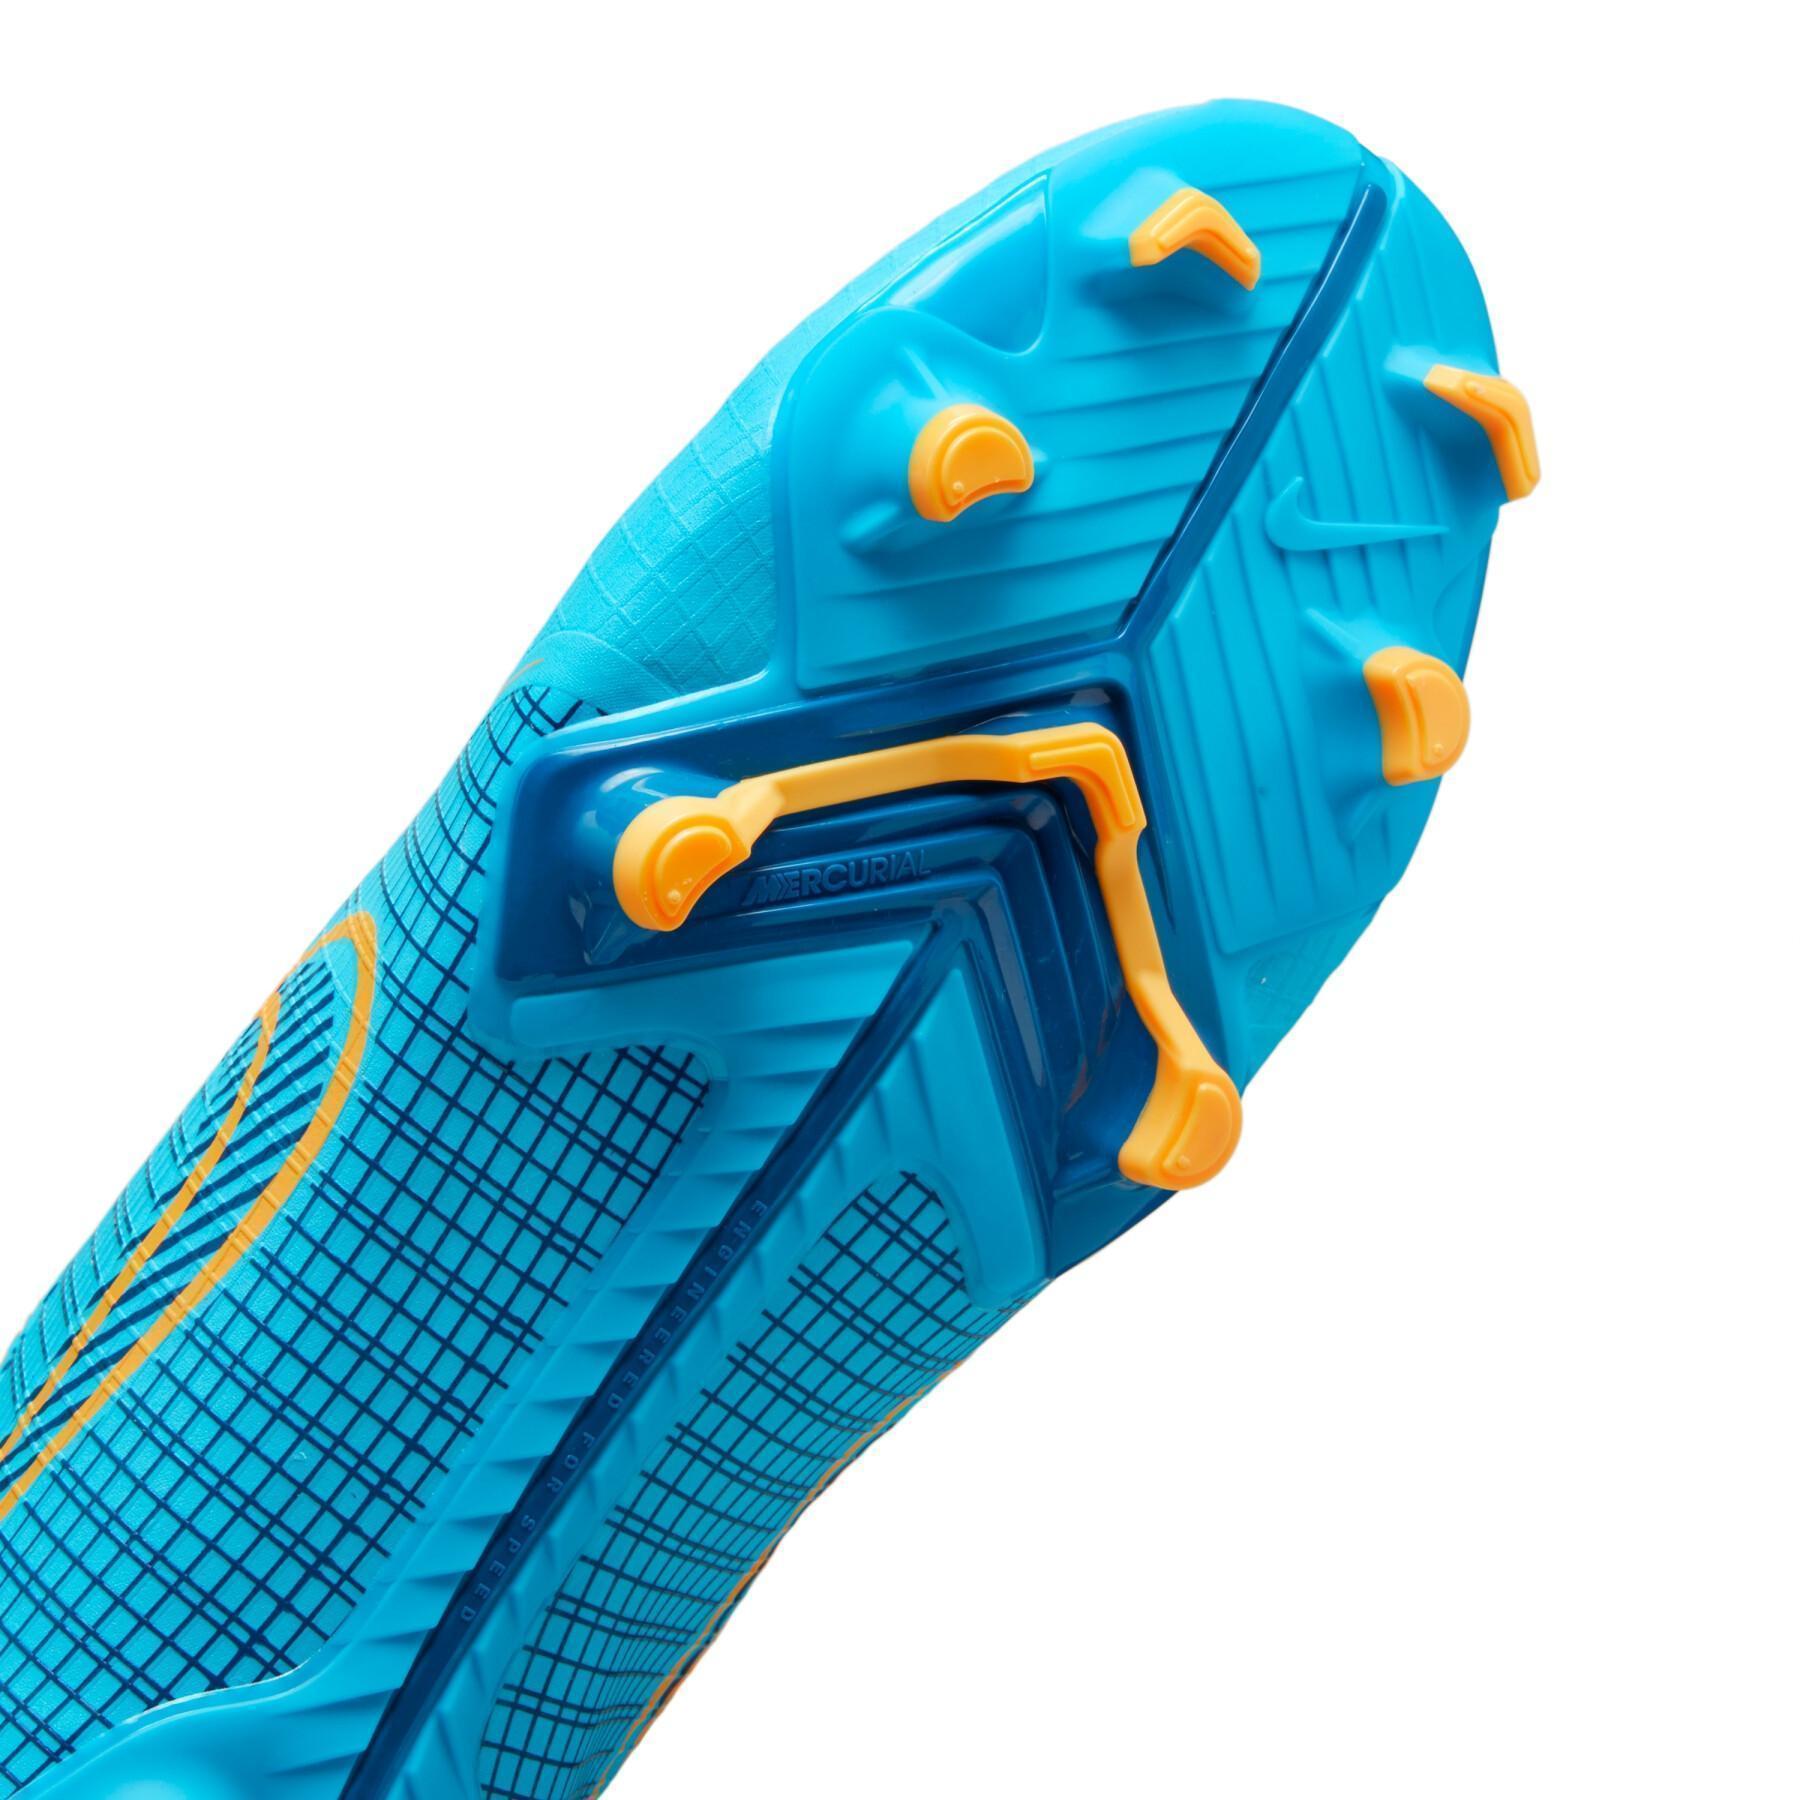 Sapatos de futebol Nike Vapor 14 Academy FG/MG -Blueprint Pack